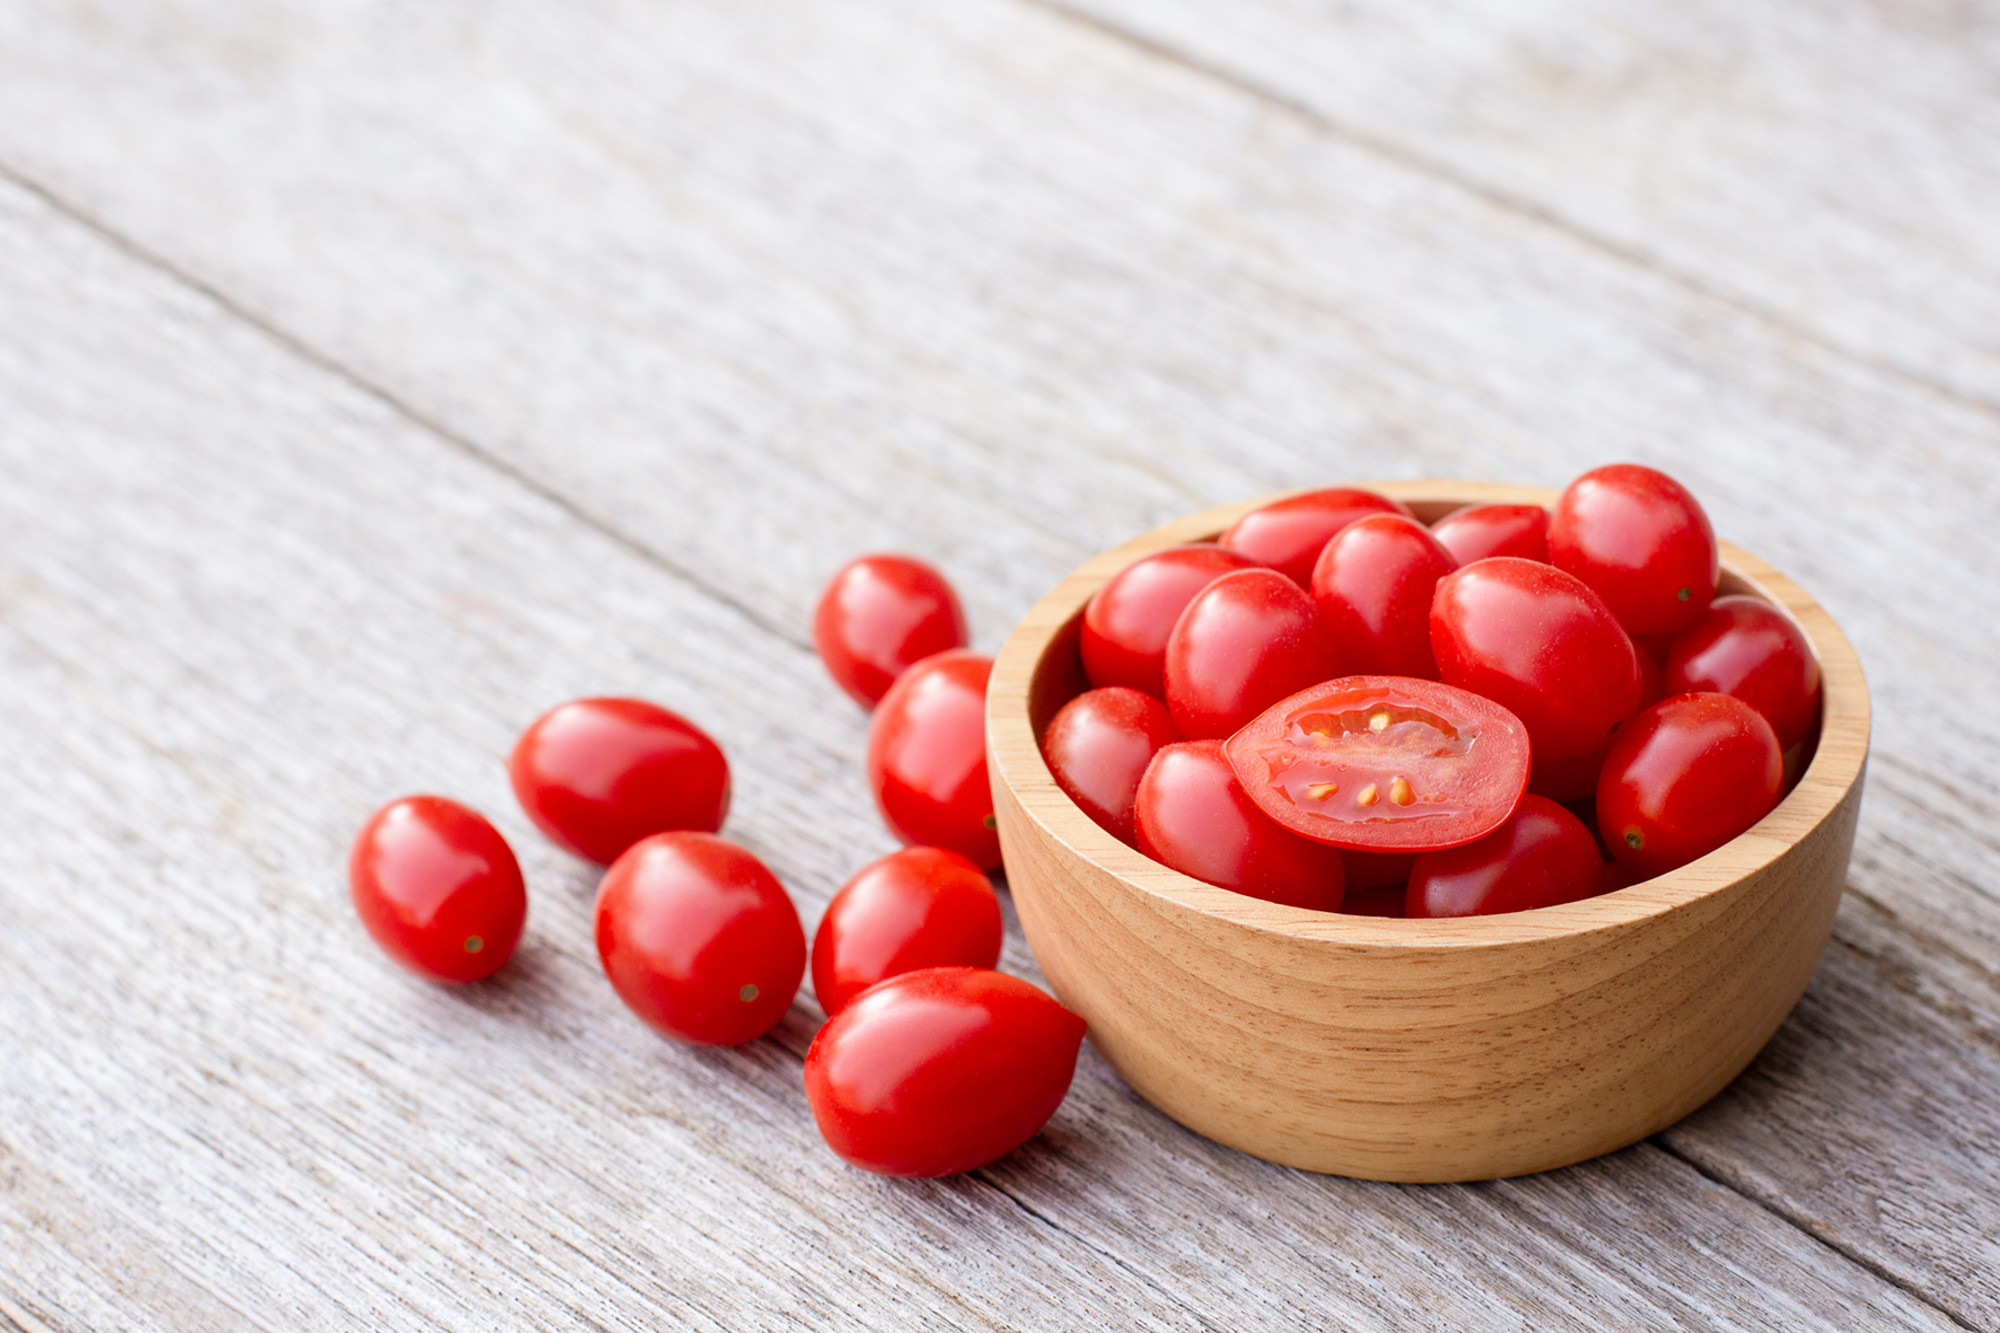 Tomates cerises allongées